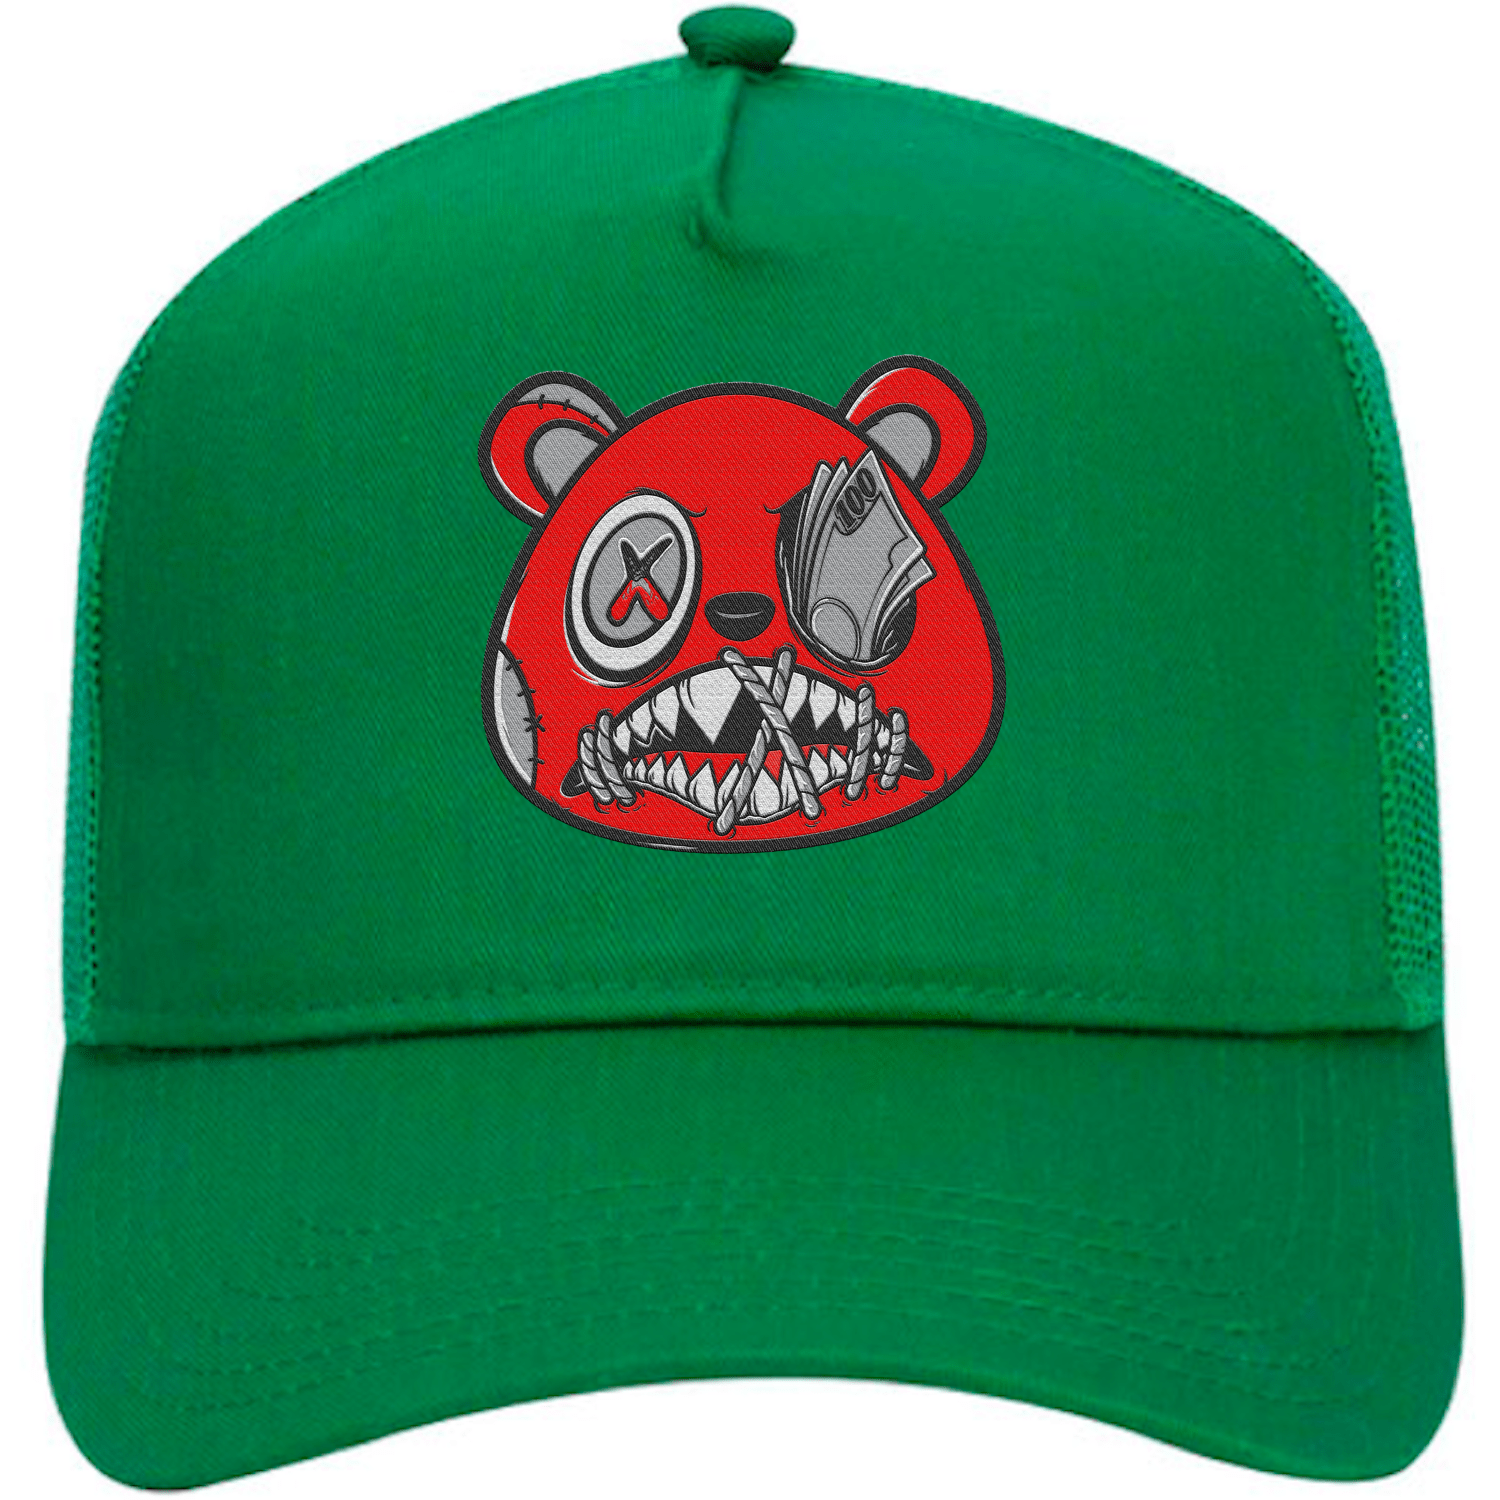 Lucky Green 5s Trucker Hats - Jordan 5 Lucky Green 5s Hats - Money